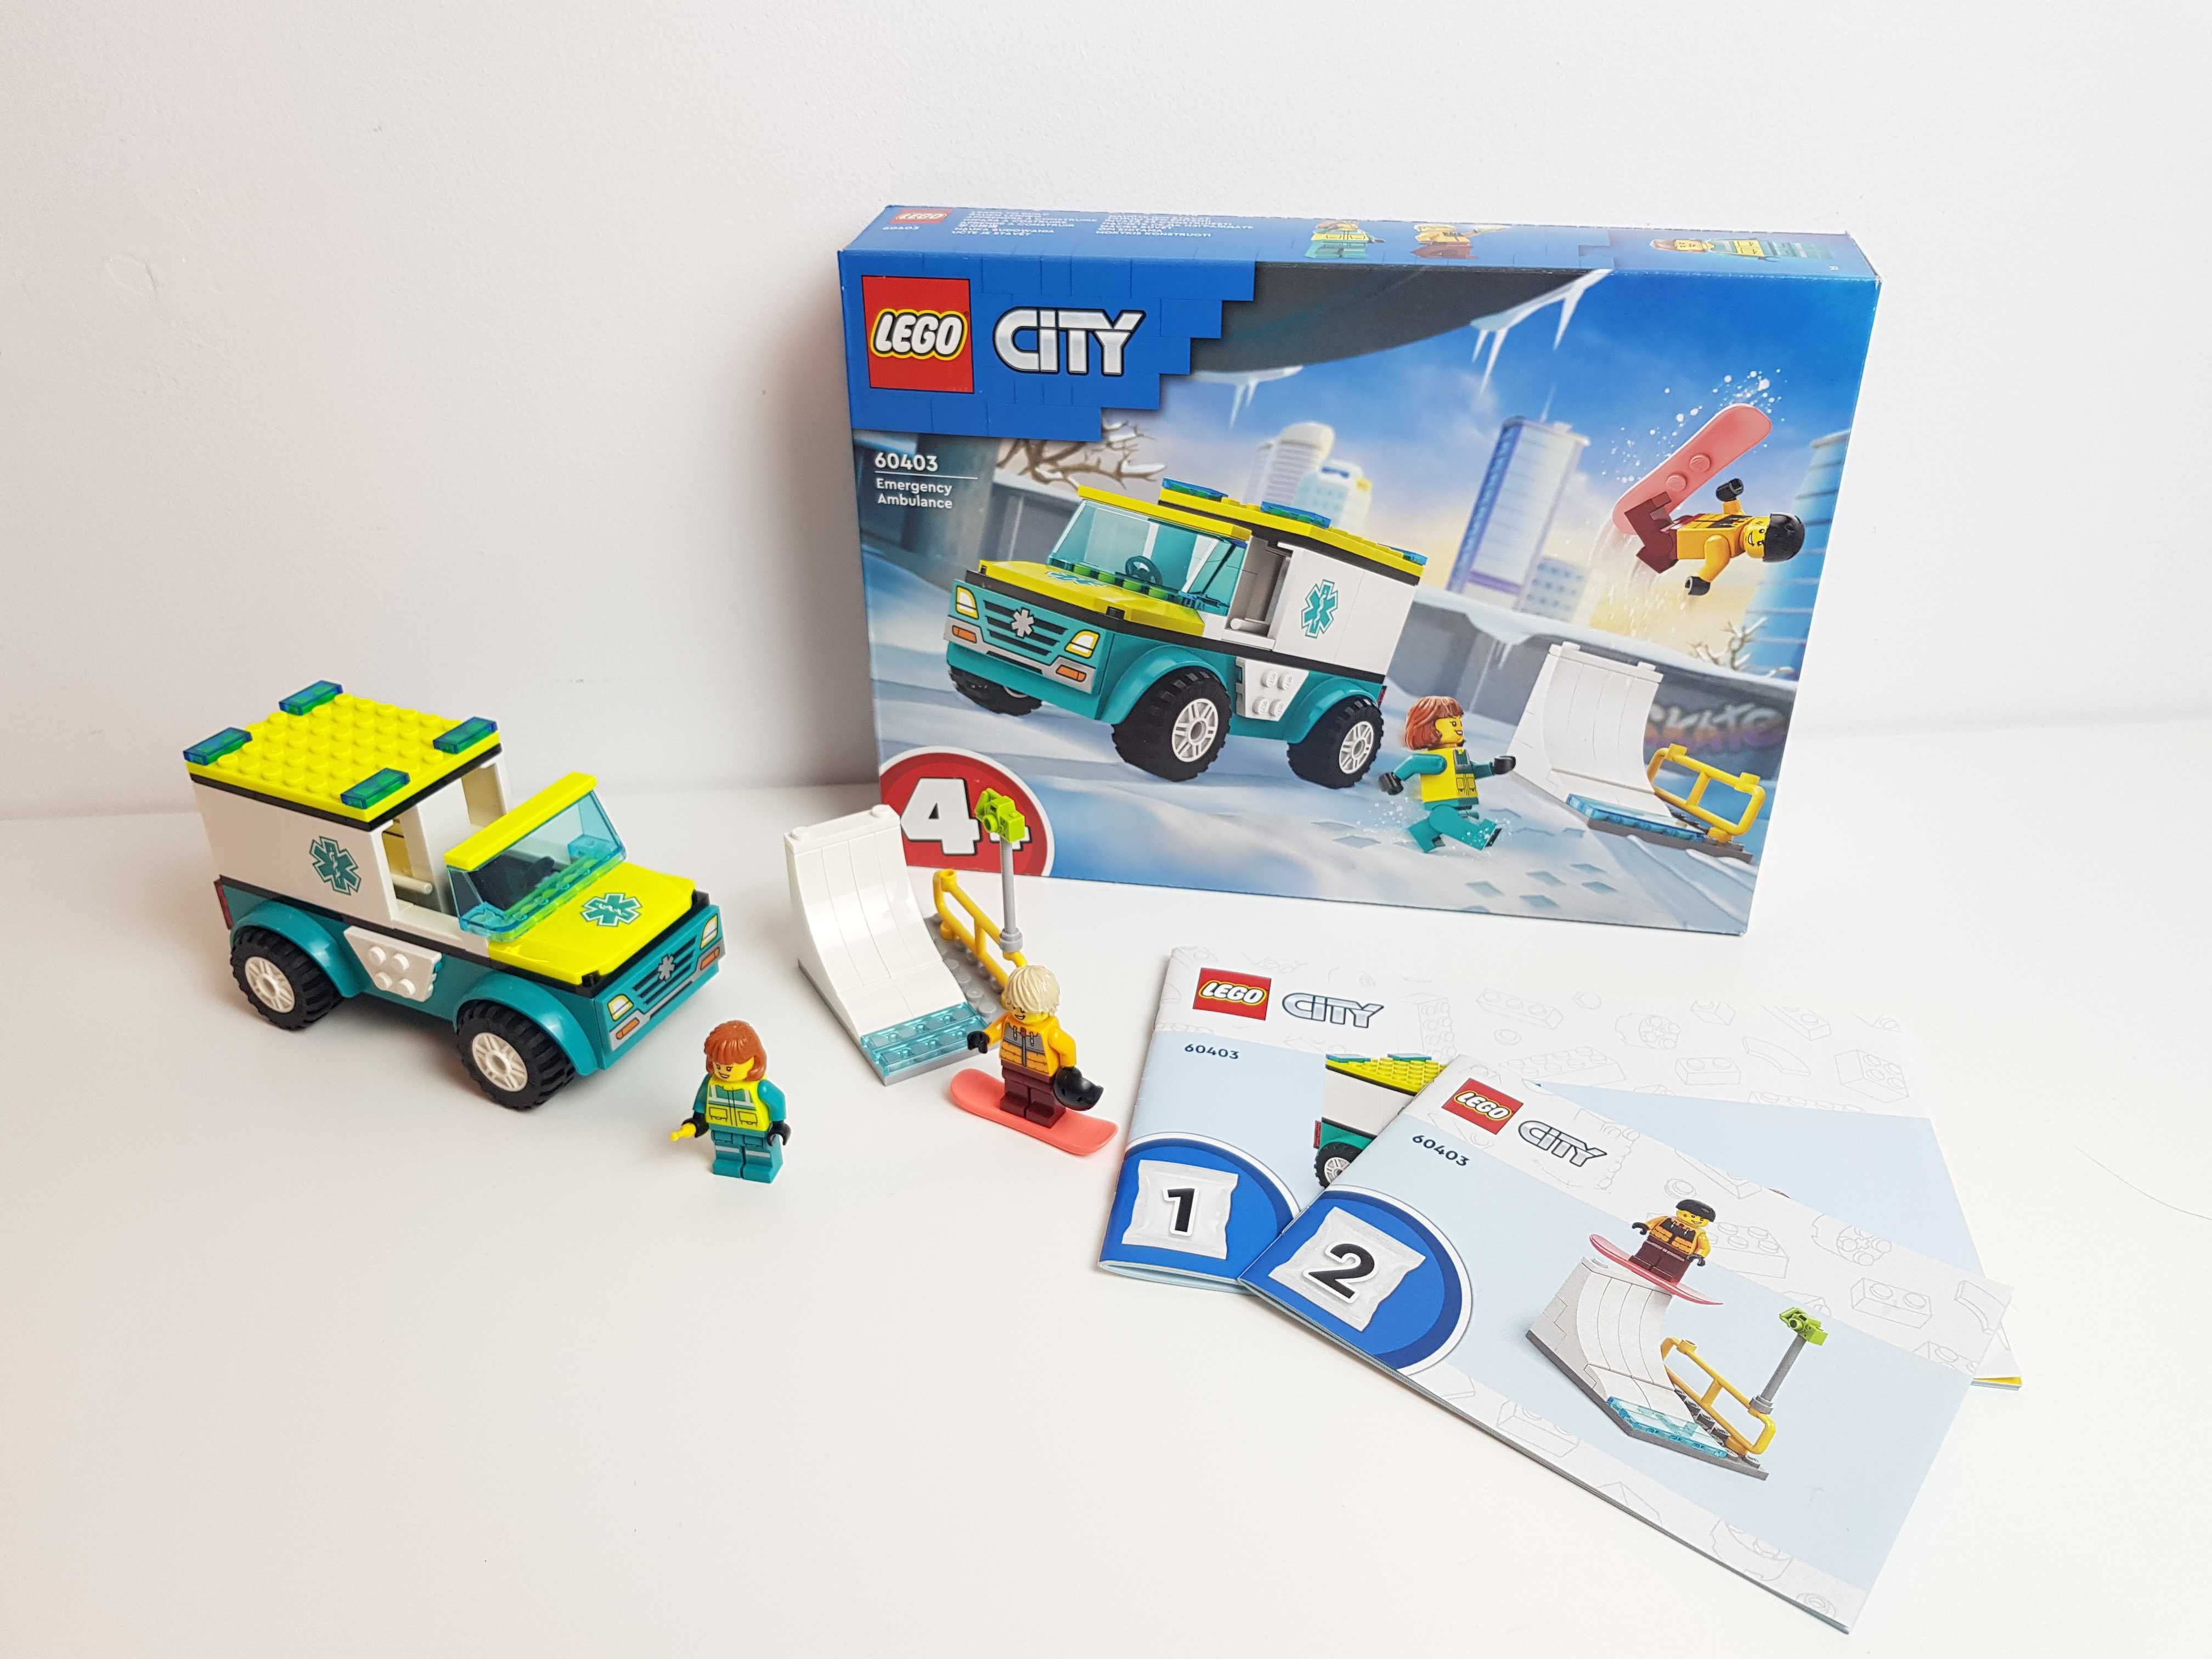 Vand LEGO 2024 City Medical - 60403: Emergency Ambulance (Ambulanta)